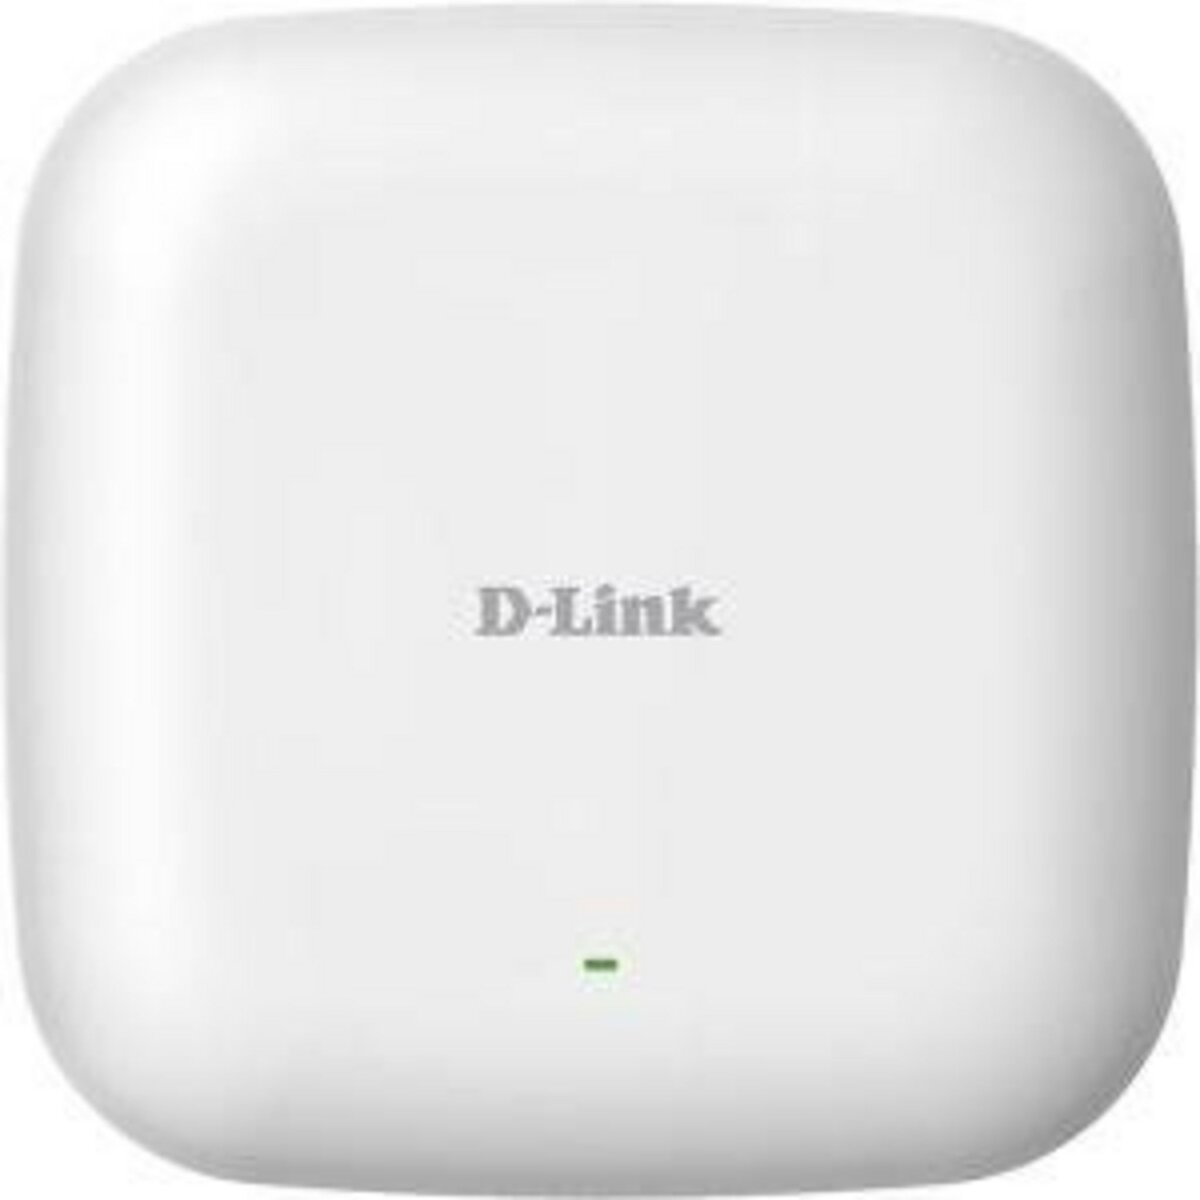 D-LINK Point d acces sans fil WIRELESS AC1200 POE ACCESS POIN